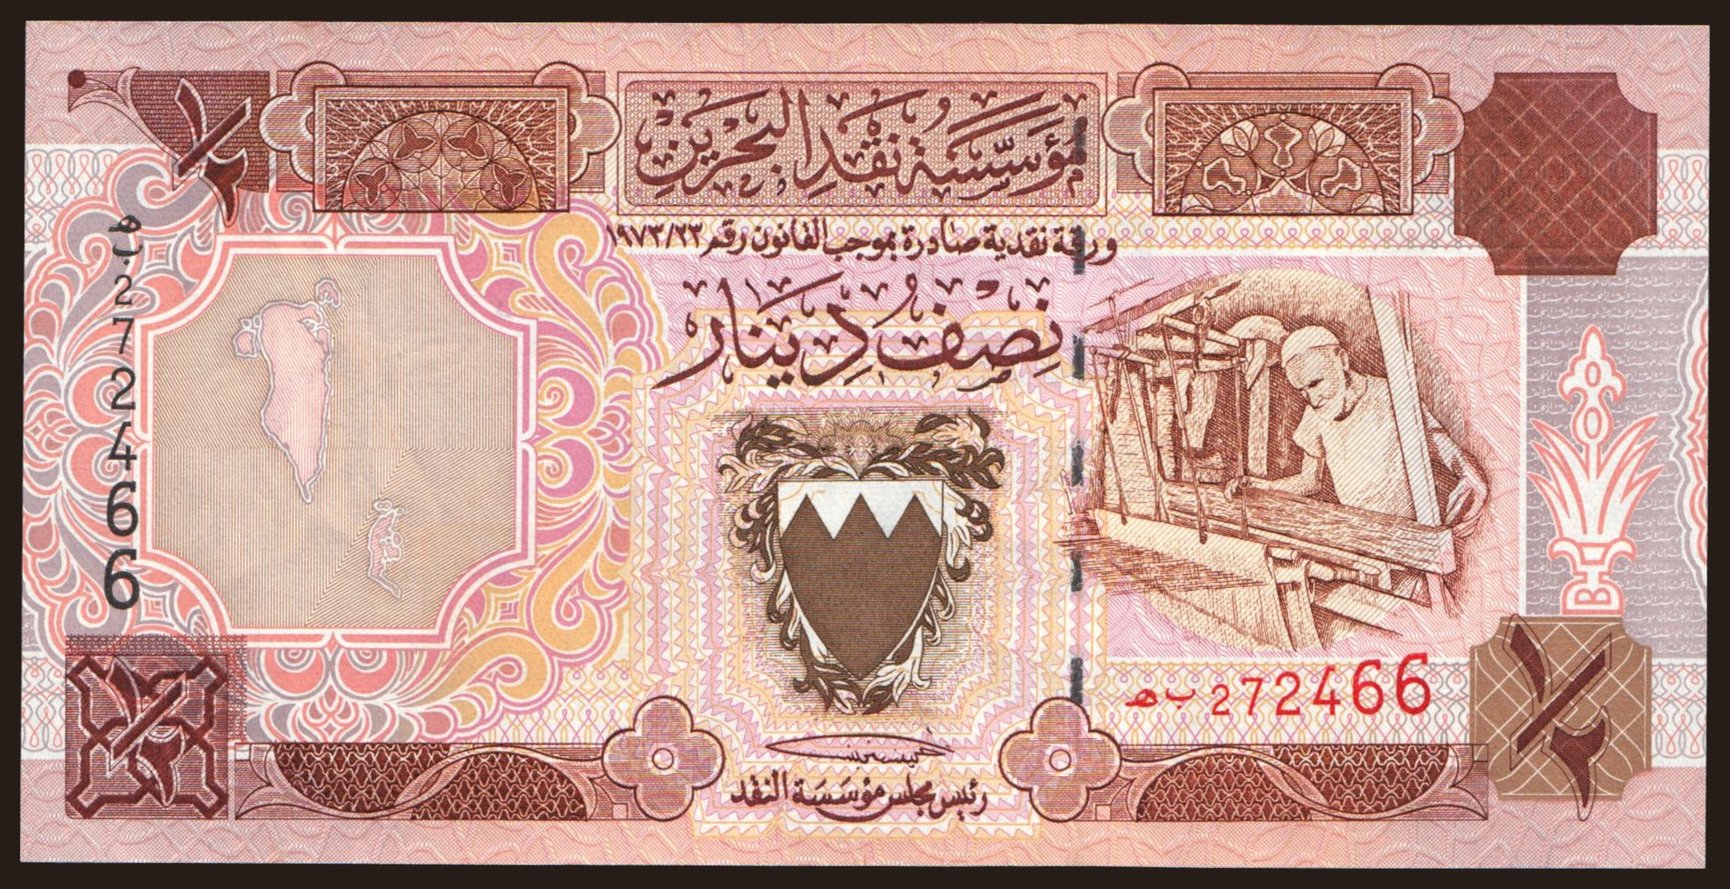 1/2 dinar, 1996